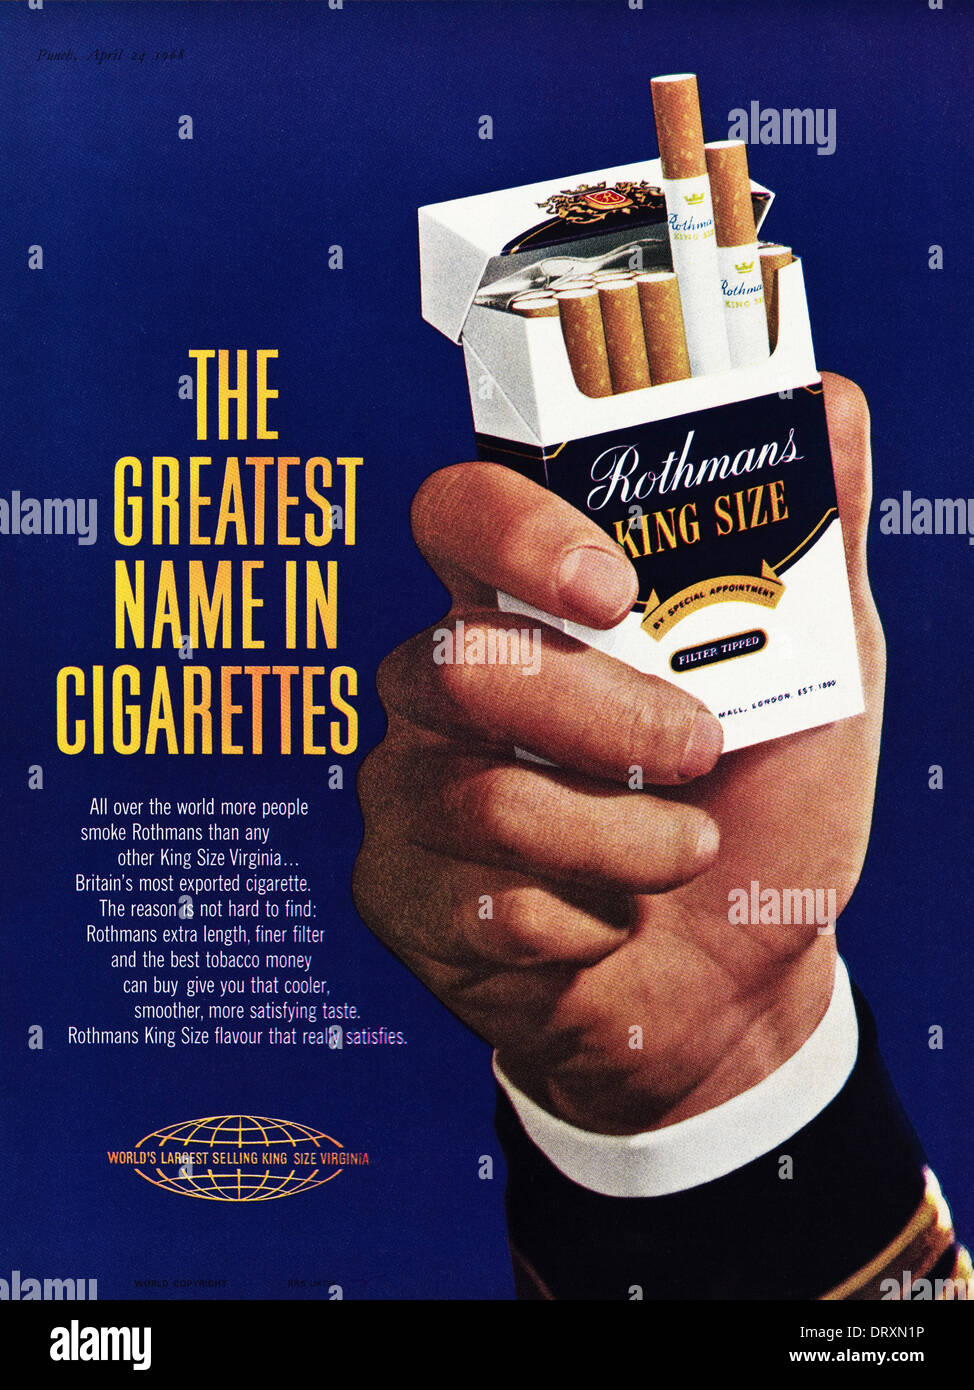 Cigarette Ads In Magazines